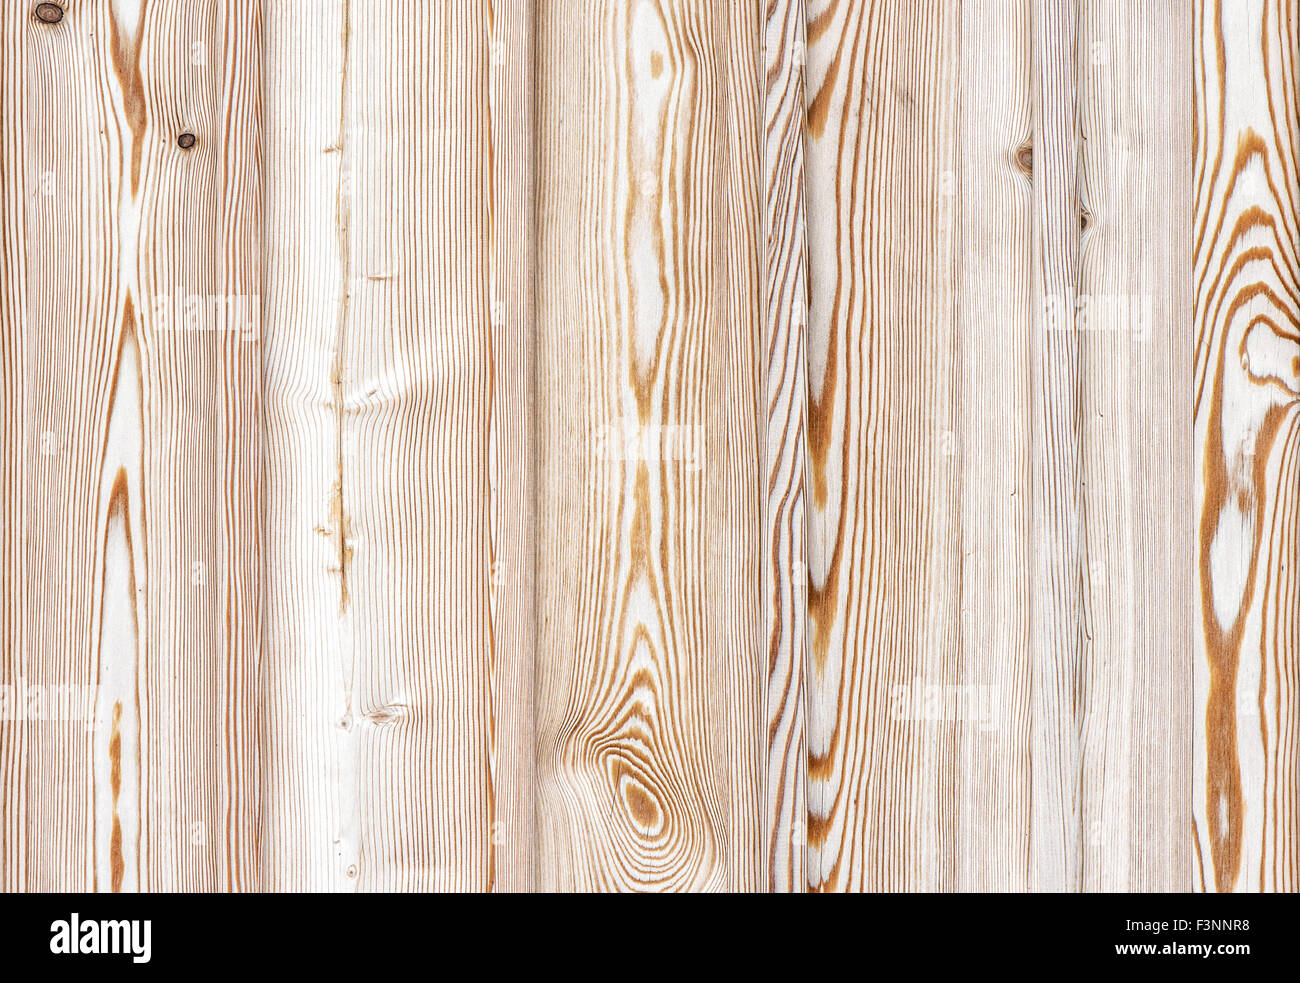 Vintage natürlichen Holz-Hintergrund. wohnhaft rustikale Kulisse. Tapete Stockfoto